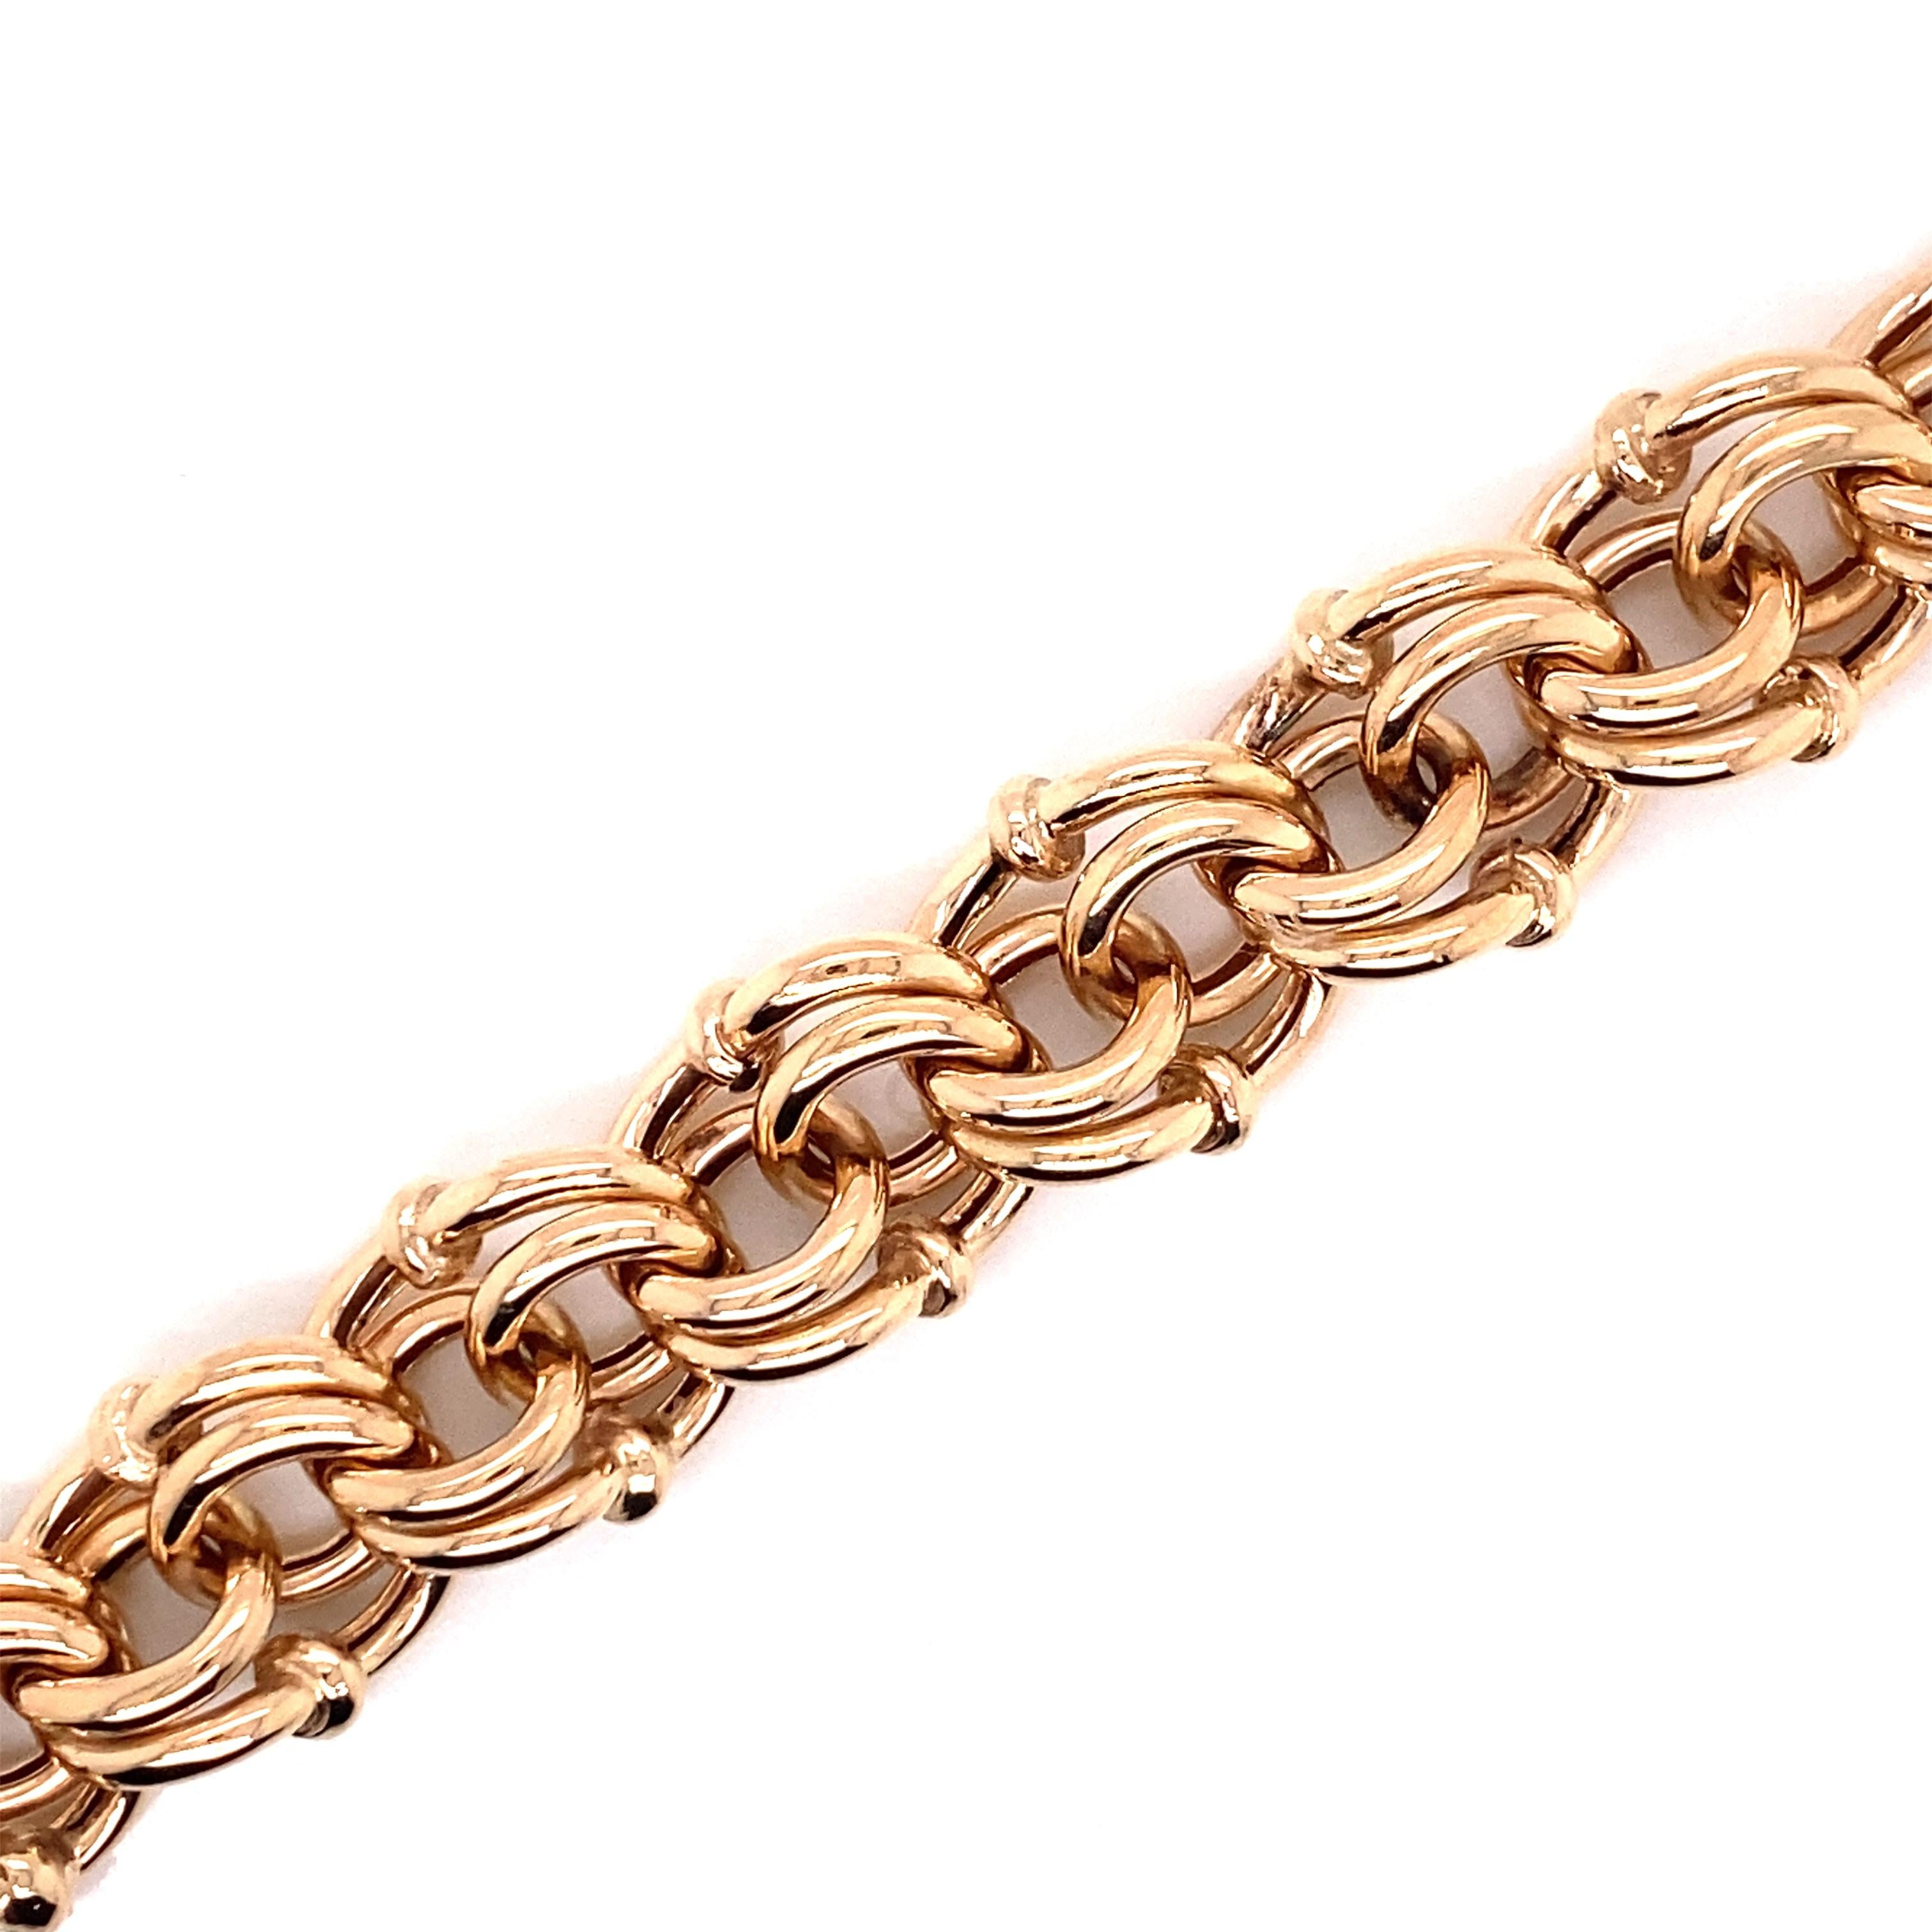 Vintage 1990's 14K Rose Gold Wide Charm Link Bracelet - Le bracelet mesure 0,5 pouces de large et 8 pouces de long et dispose d'un fermoir à piston caché avec un loquet de sécurité. Le bracelet pèse 26,63 grammes d'or. 